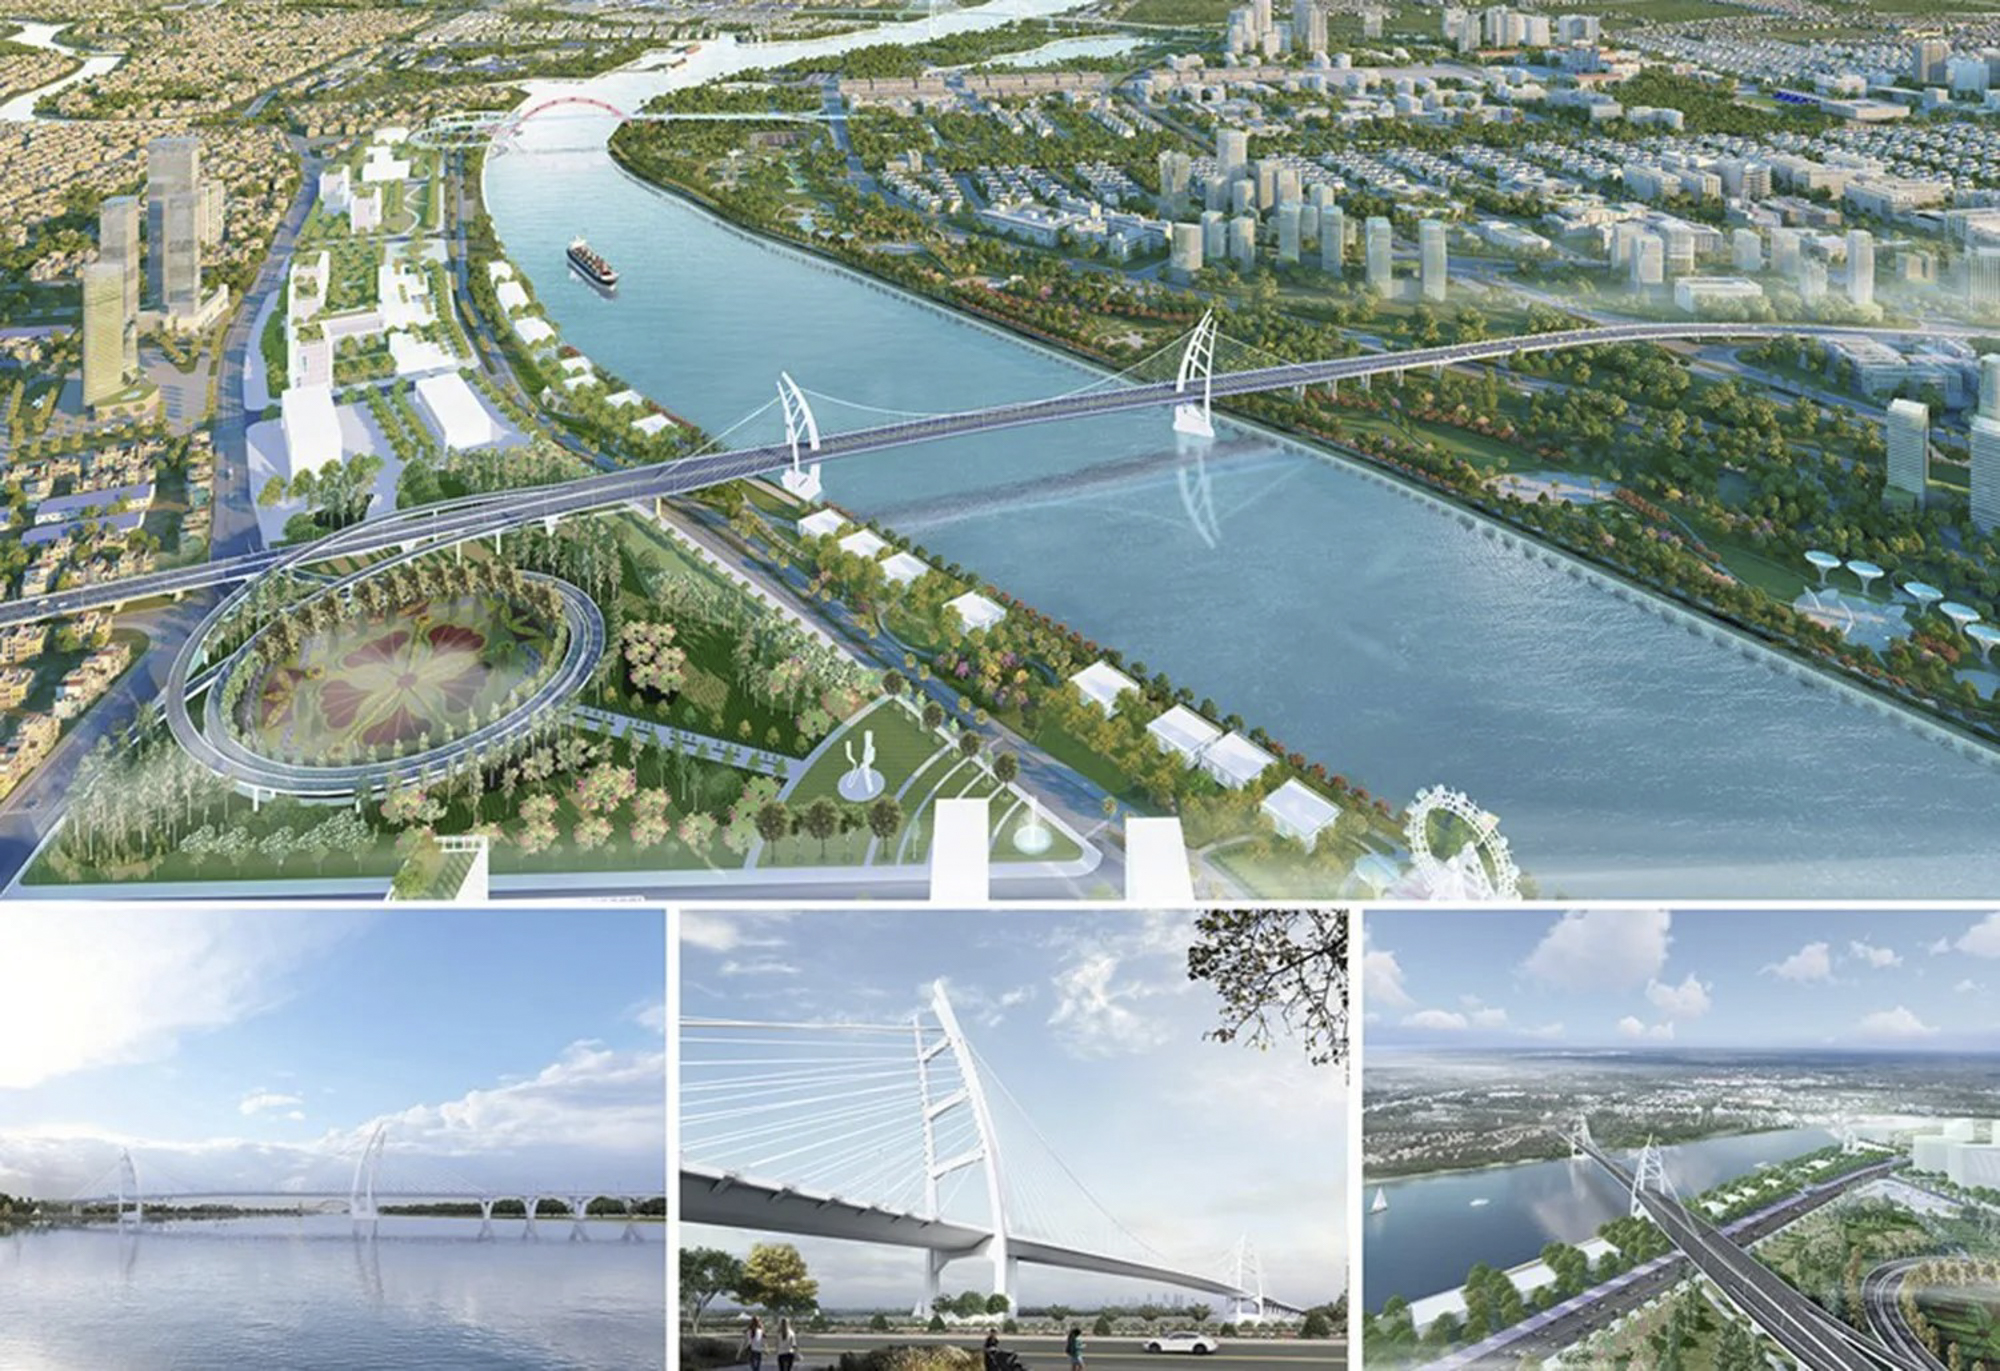 Toàn cảnh khu vực sẽ được xây cầu hơn 6.300 tỷ, kết nối trung tâm cũ và trung tâm mới của Hải Phòng- Ảnh 3.